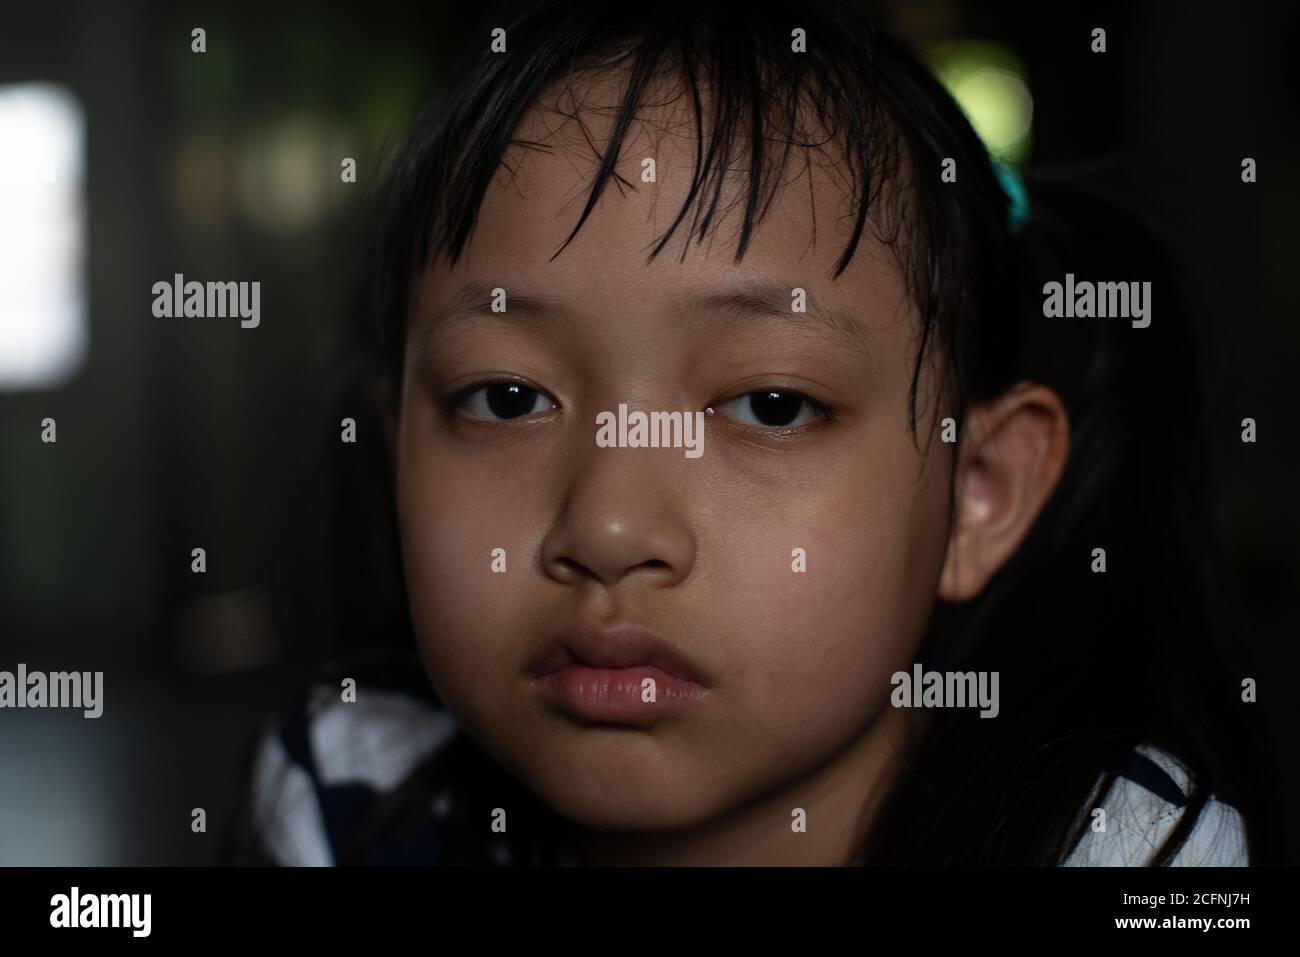 Asiatische kleines Kind Mädchen suchen und denken mit einsam Und Traurigkeit.Low-Key-Stil Stockfoto